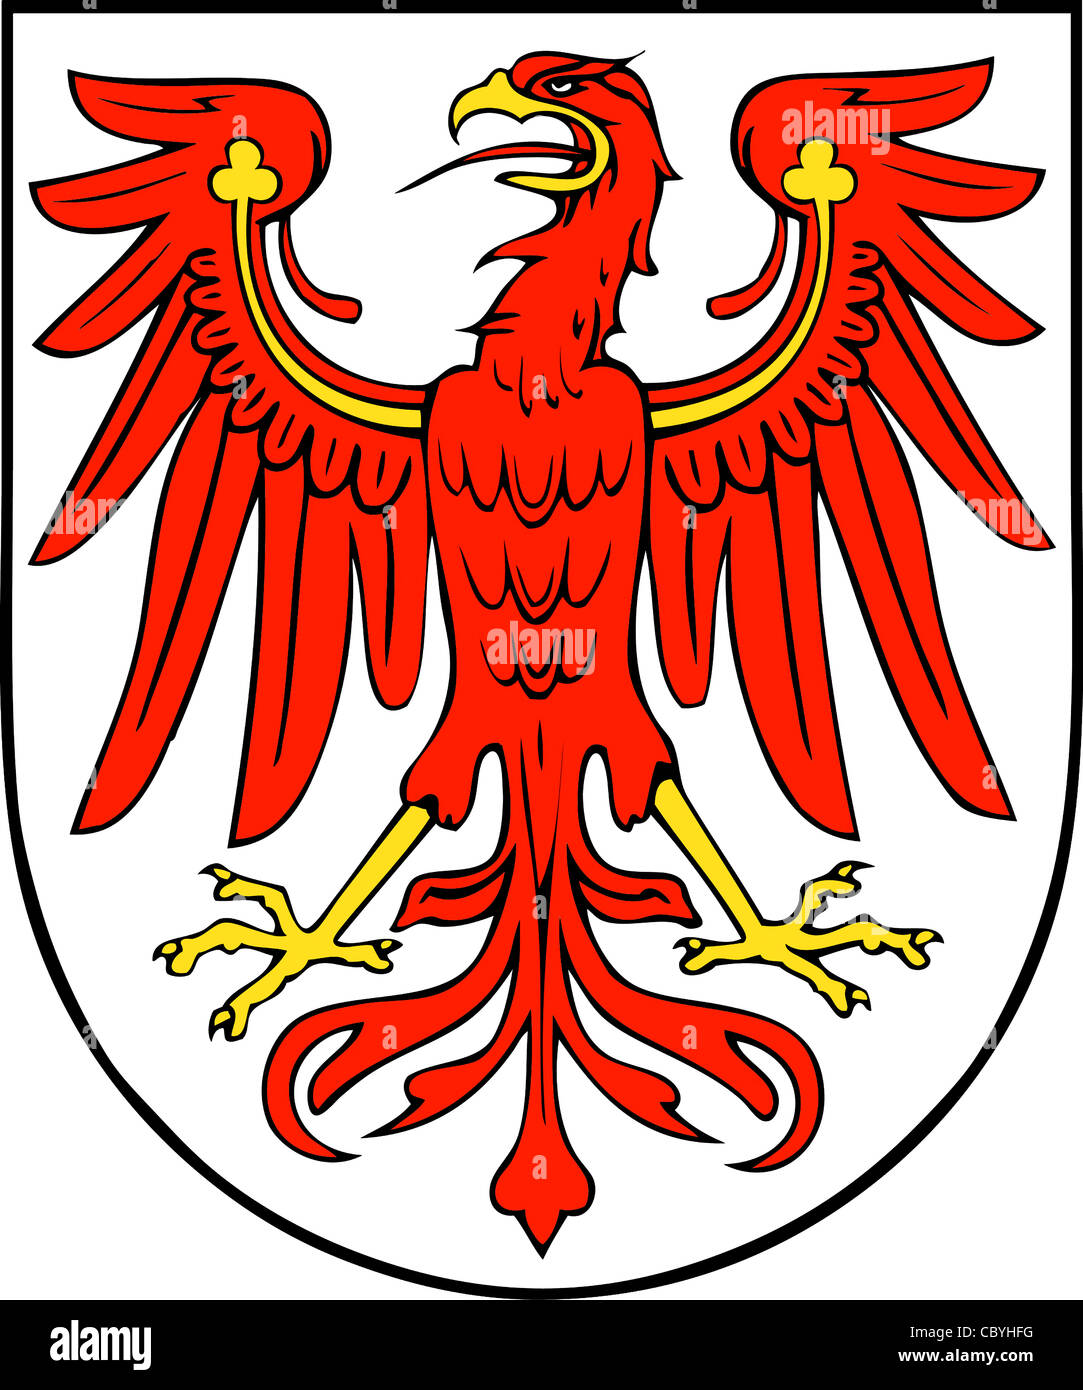 Armoiries de l'Etat fédéral allemand de Brandebourg. Banque D'Images